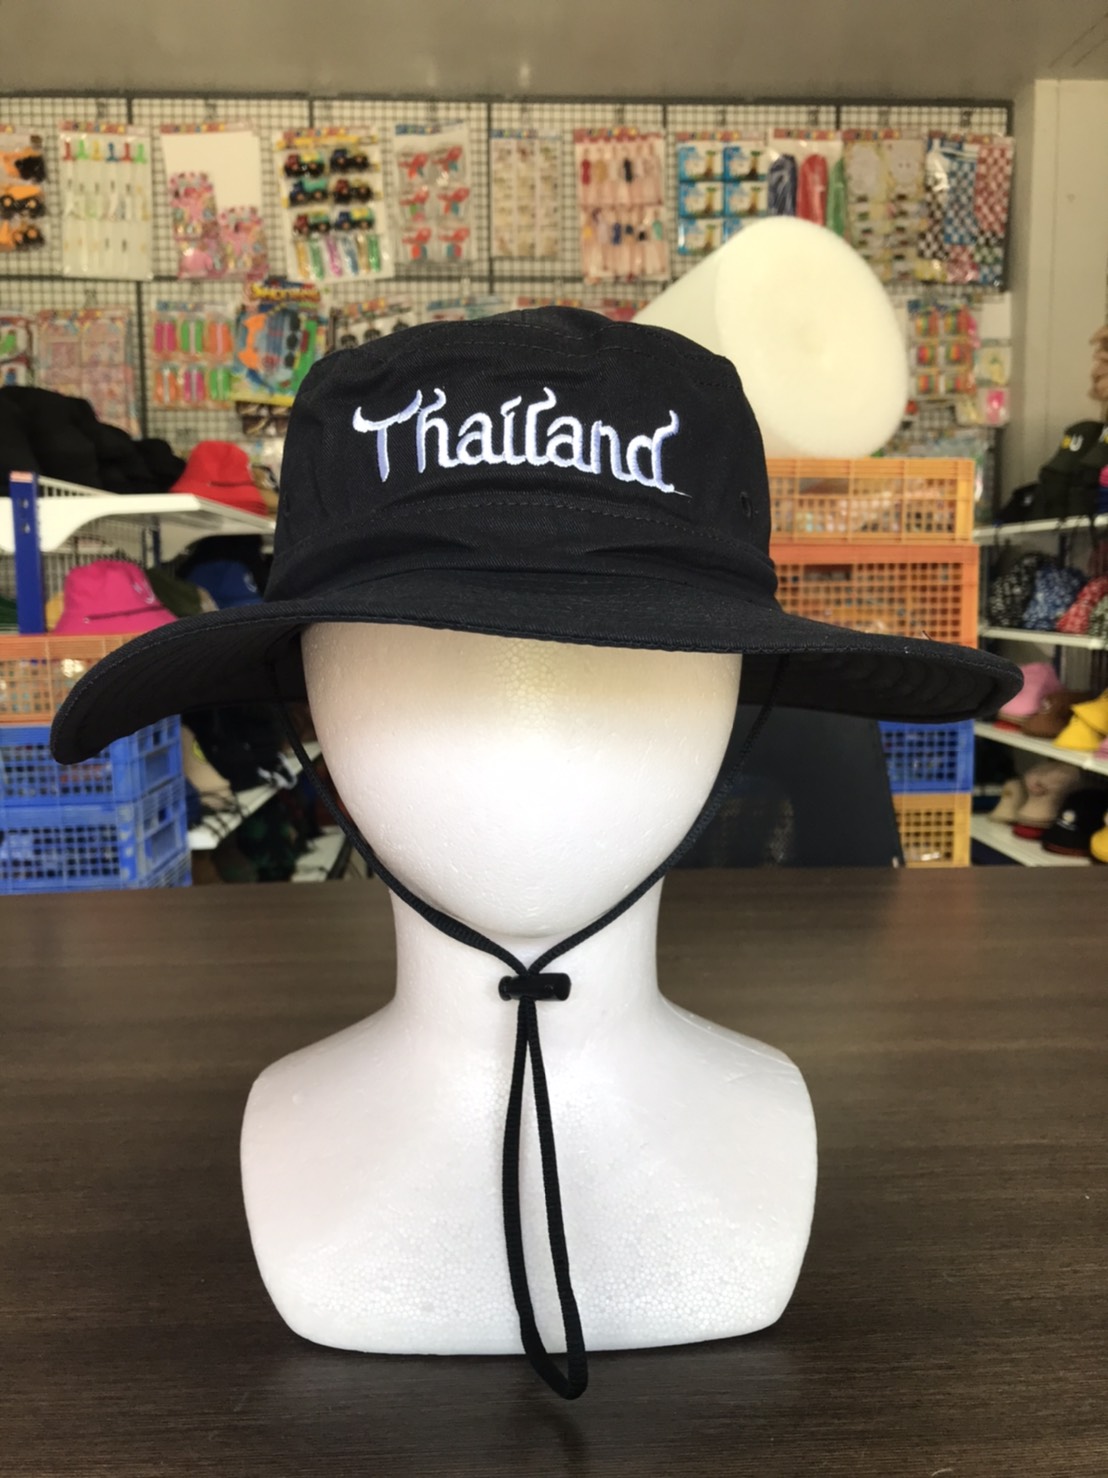 พร้อมส่ง หมวกบักเก็ตเดินป่ามีสายคล้องAM0048 (Bucket hat) หมวกเดินป่า มีสาย หมวกบักเก็ตเดินป่า ลายปัก ไทยแลนด์ (Thailand)